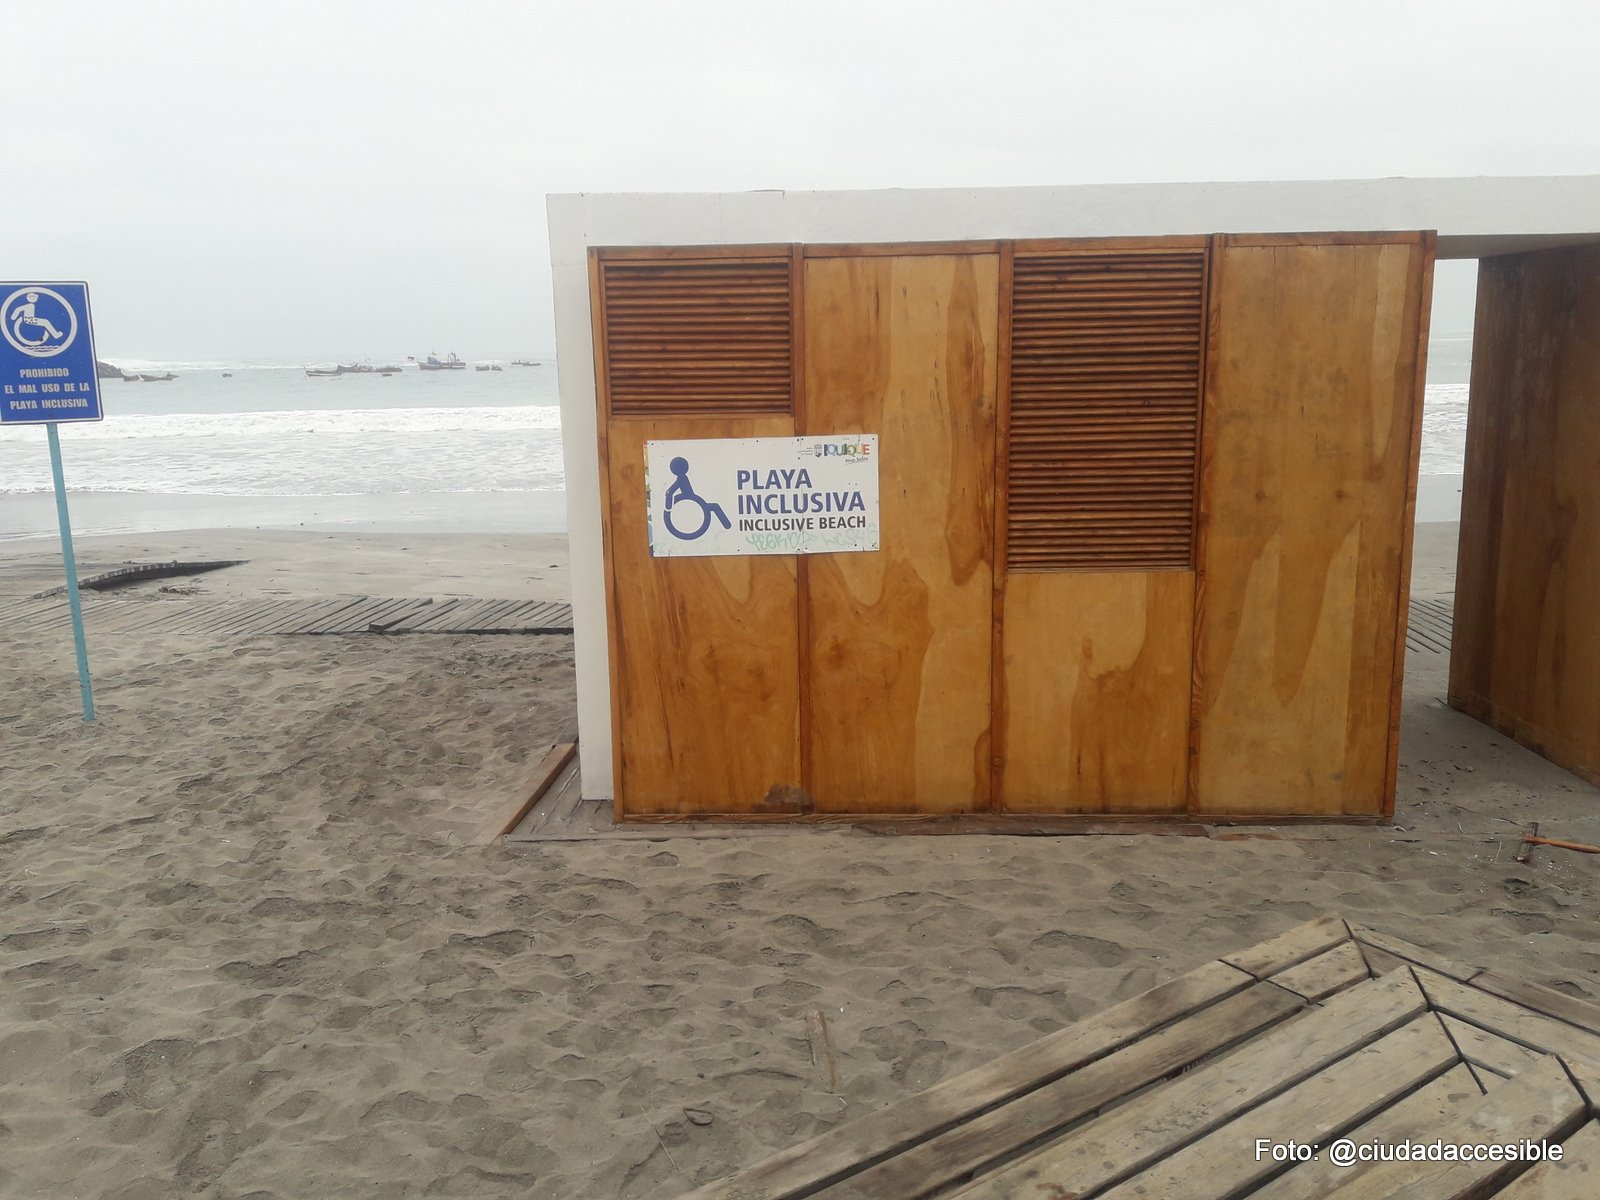 se ve una construcción de madera con el letrero playa inclusiva